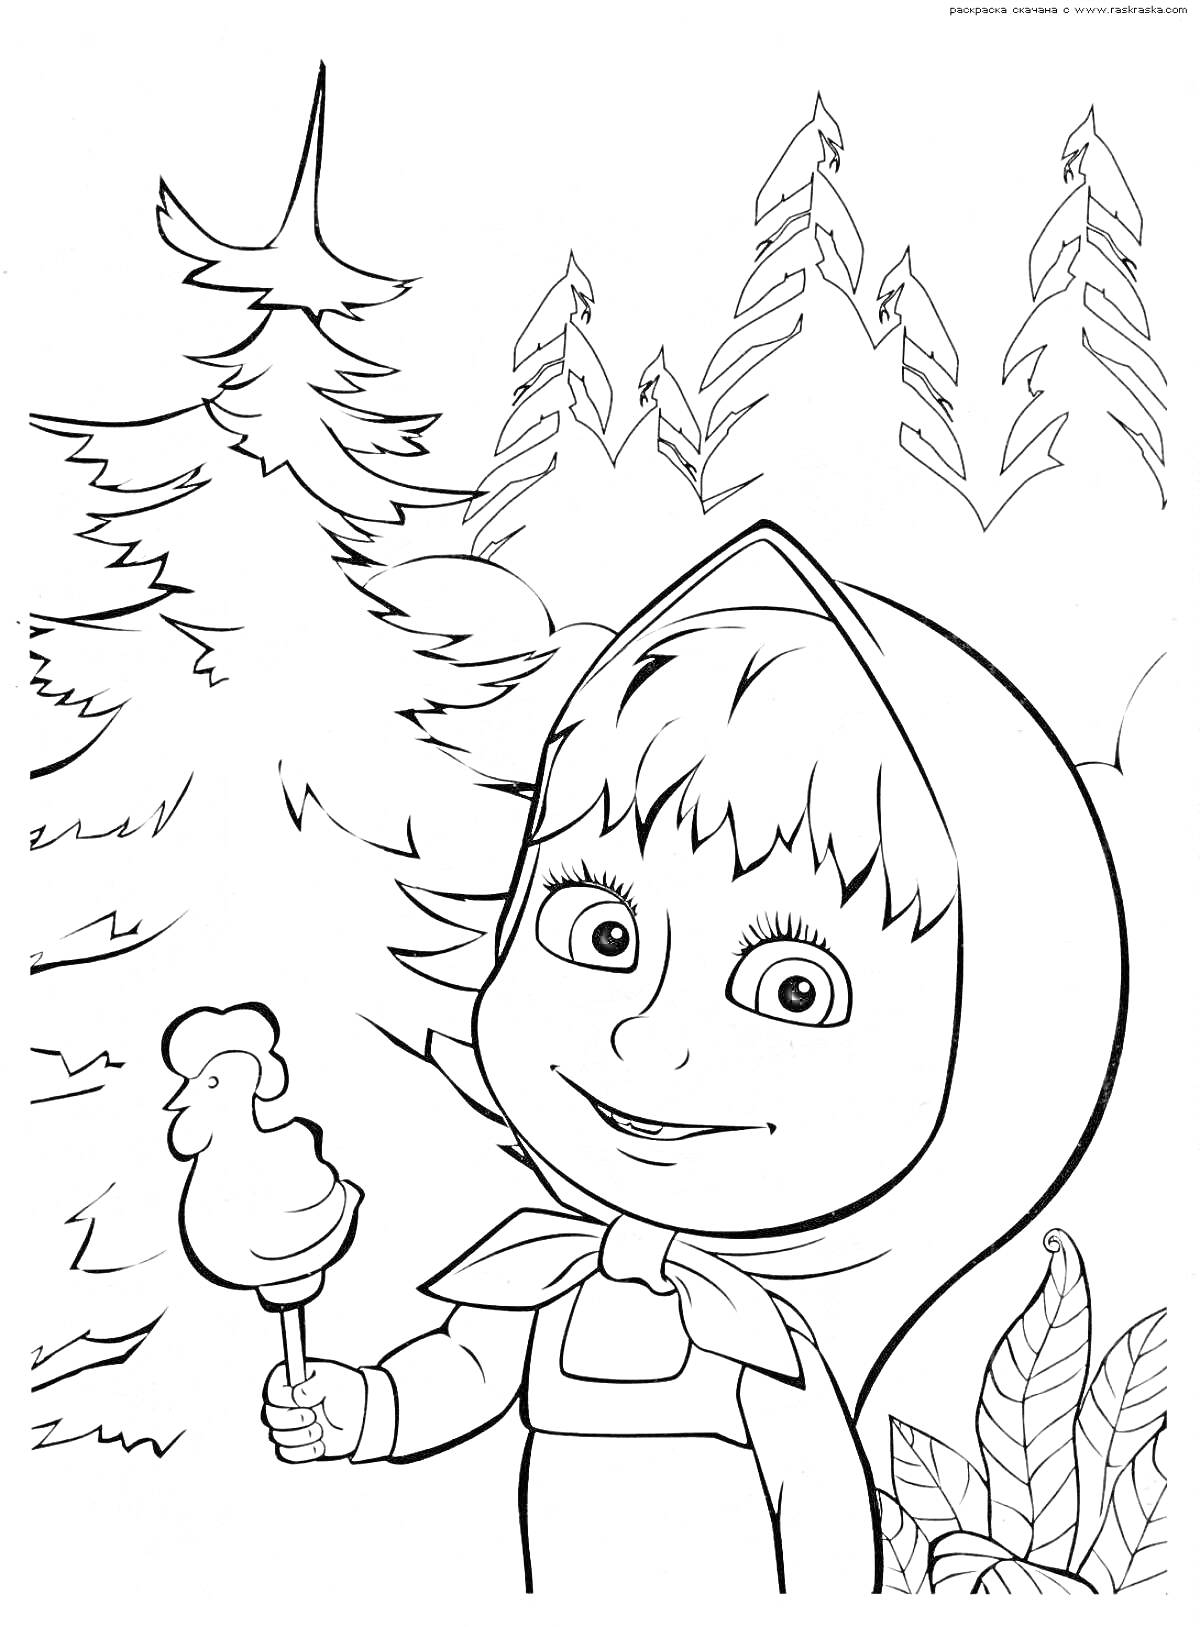 Раскраска Девочка в платочке с мороженым, лесной пейзаж, еловые деревья, кустарники.